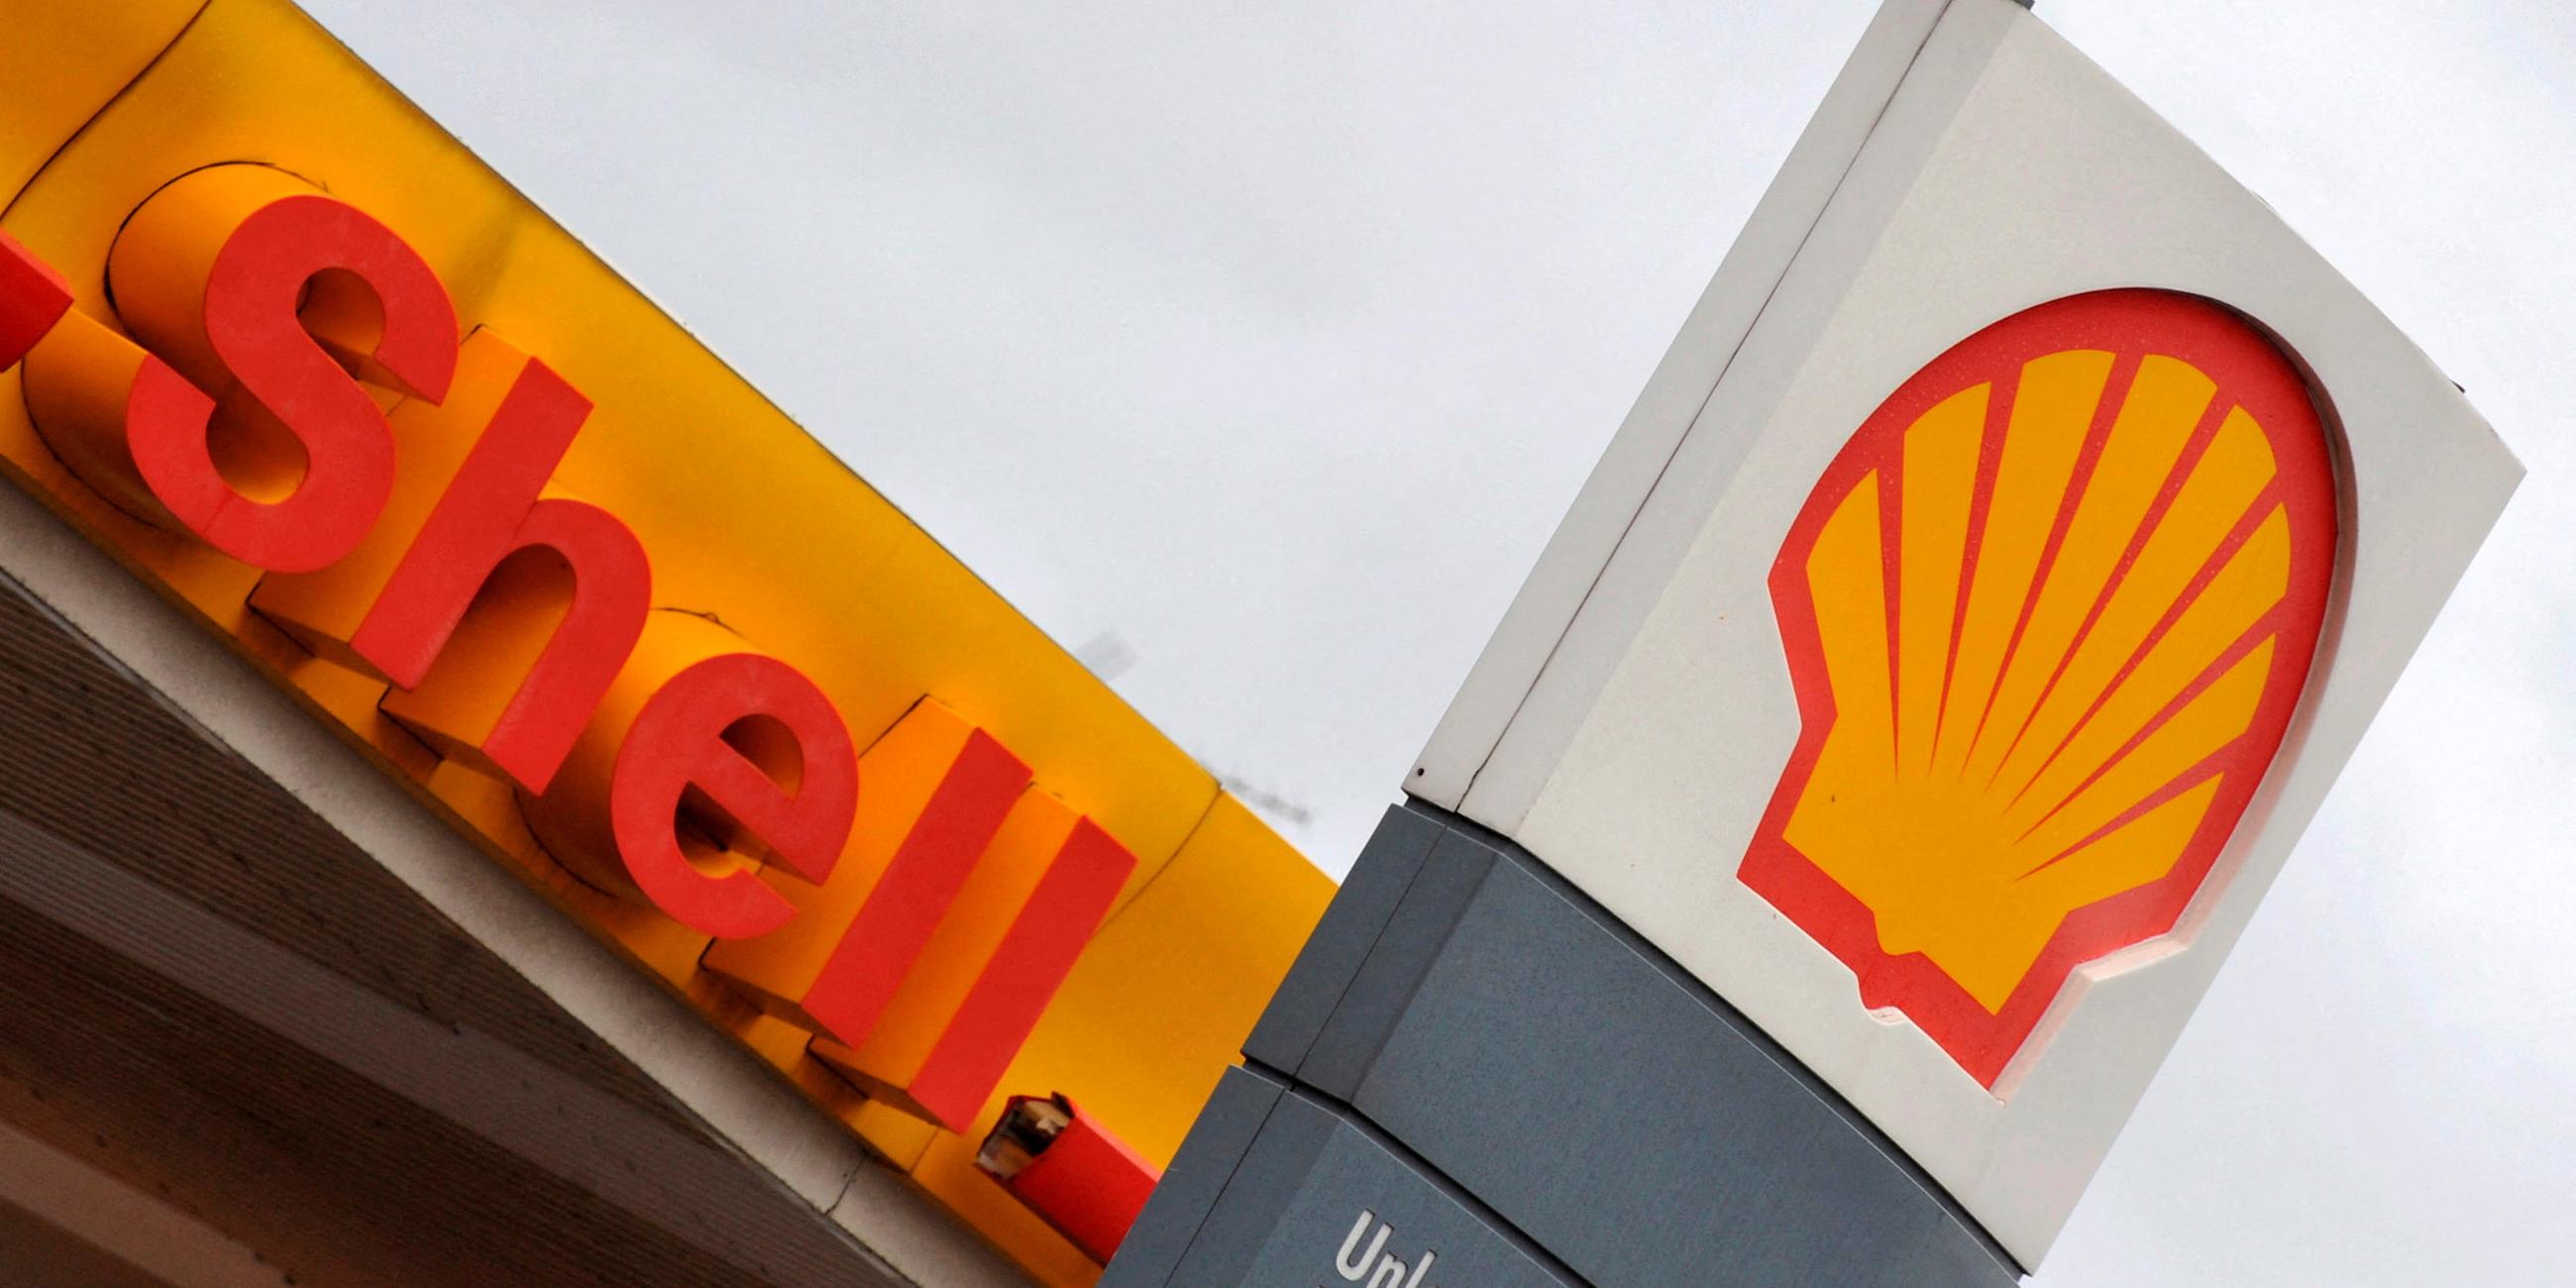 Shell-Tankstelle im Süden Londons